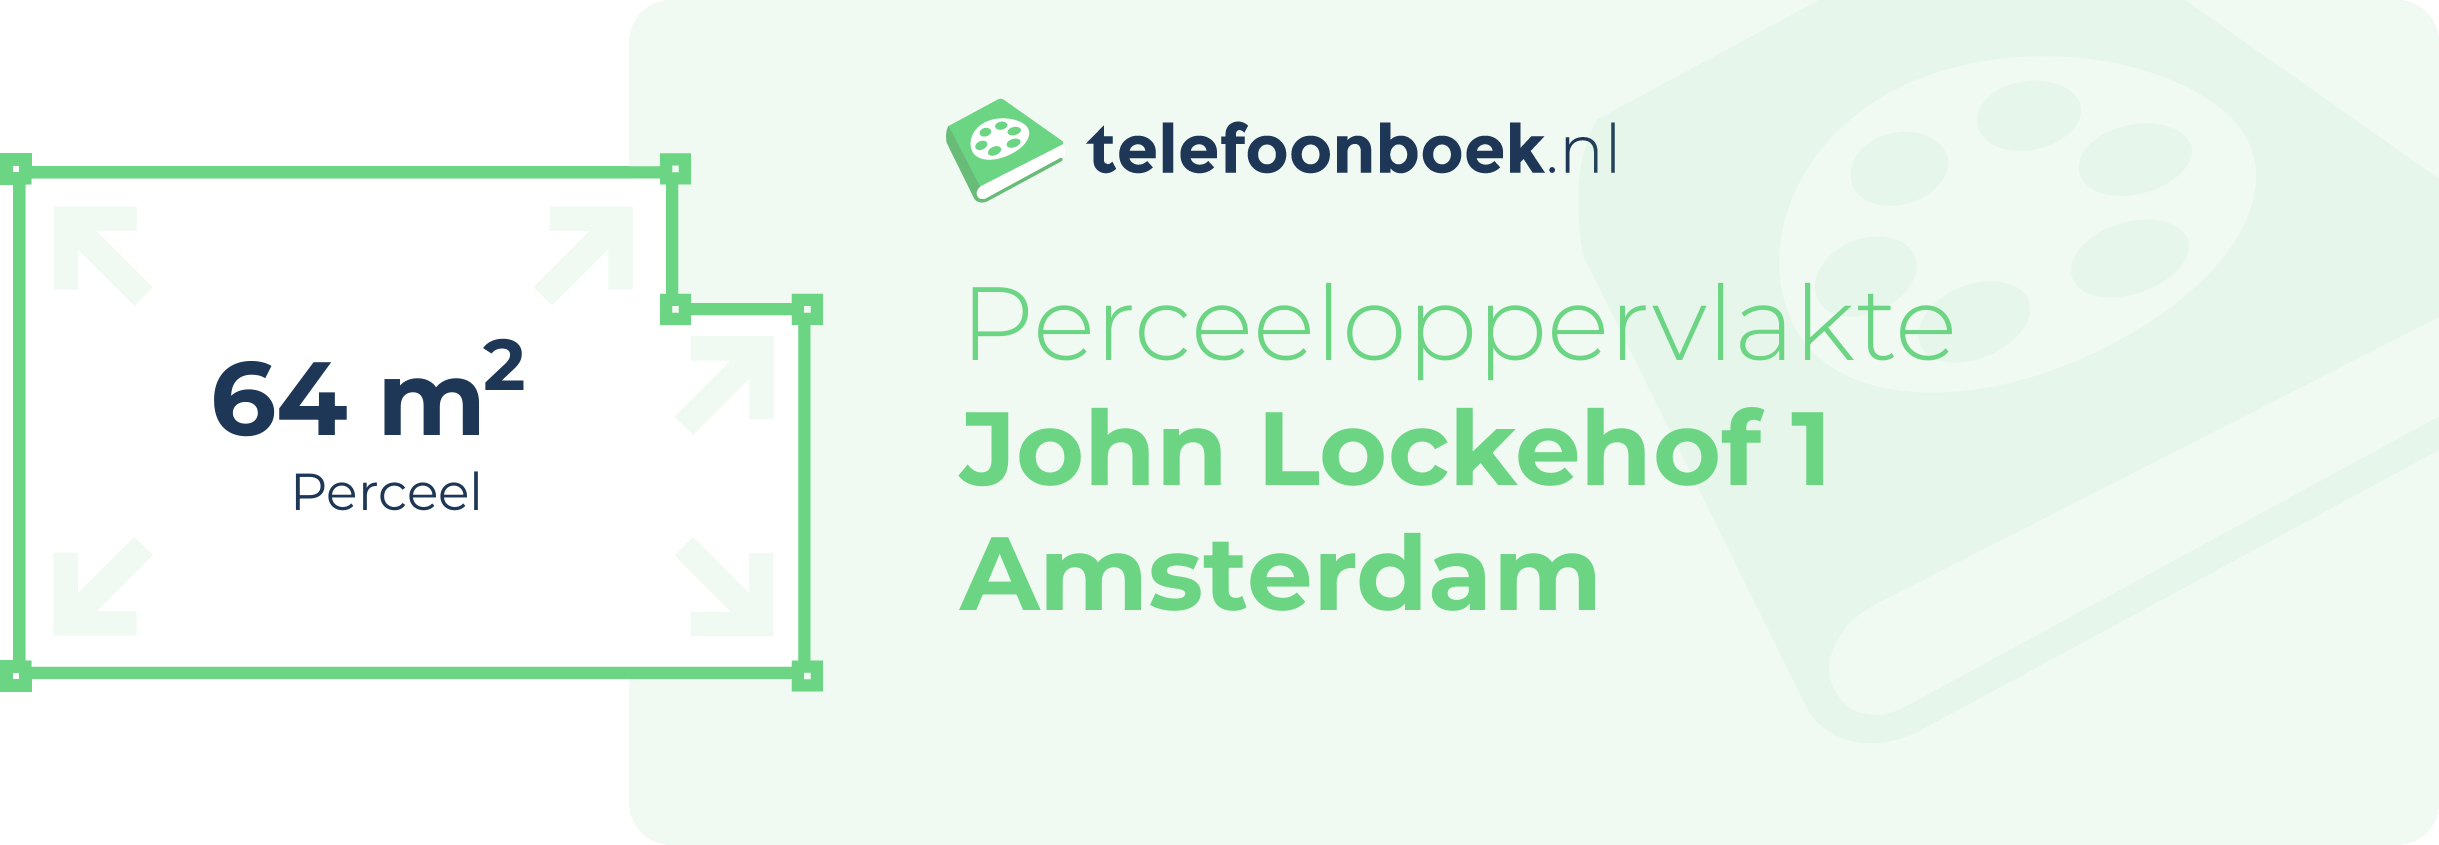 Perceeloppervlakte John Lockehof 1 Amsterdam